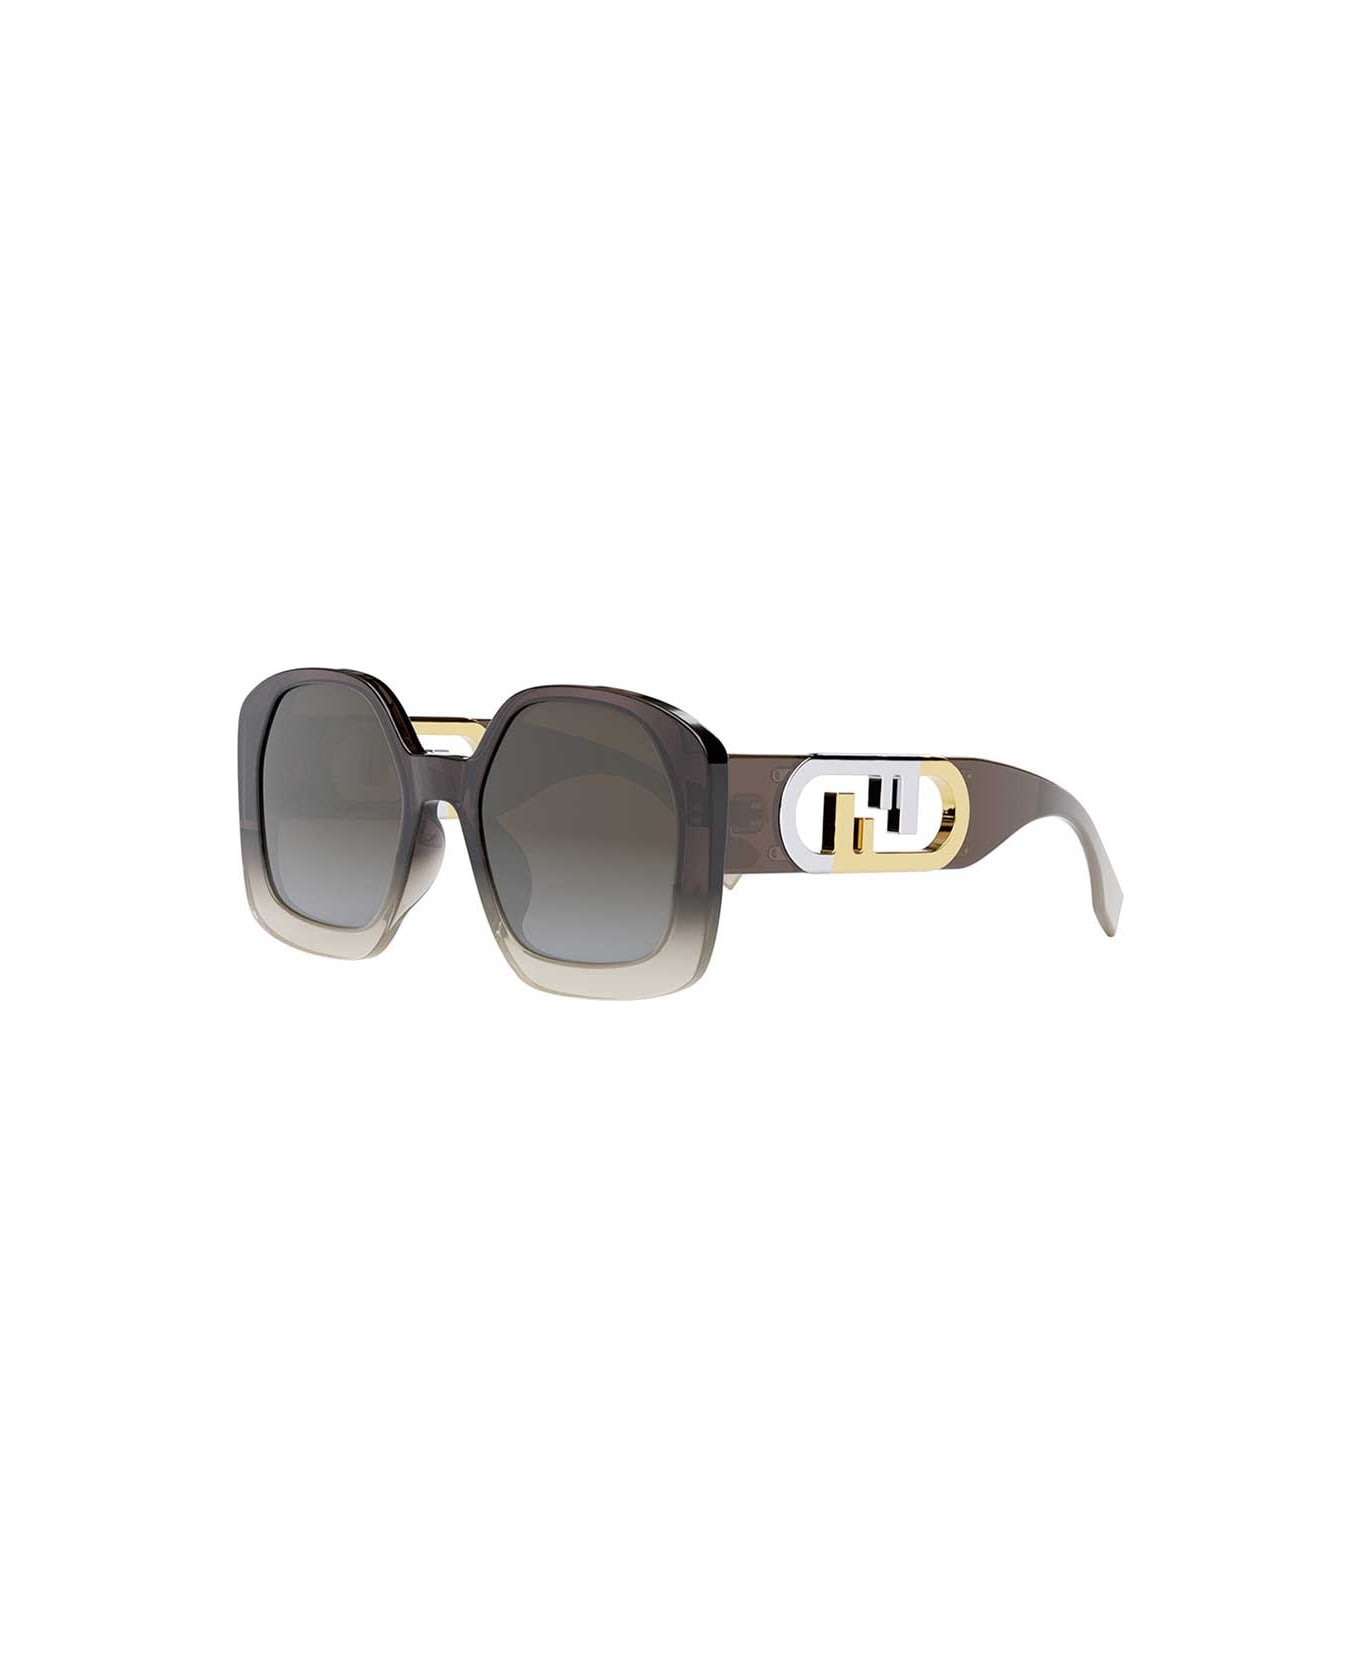 Fendi Eyewear Sunglasses - Marrone/Marrone